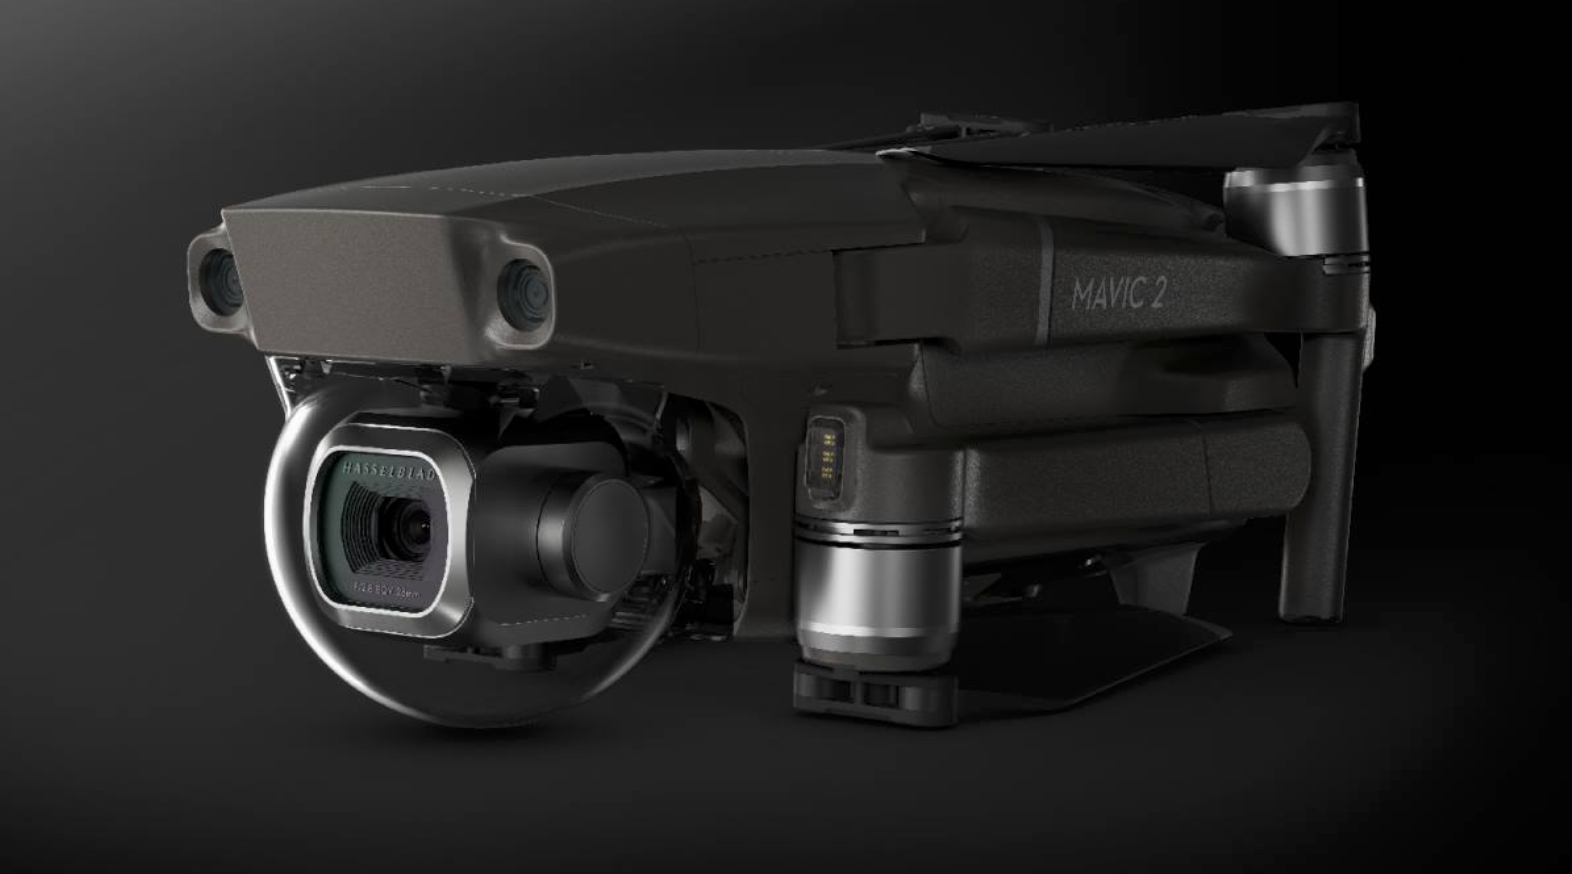 不到一万元就能买哈苏相机?大疆发布Mavic 2系列无人机